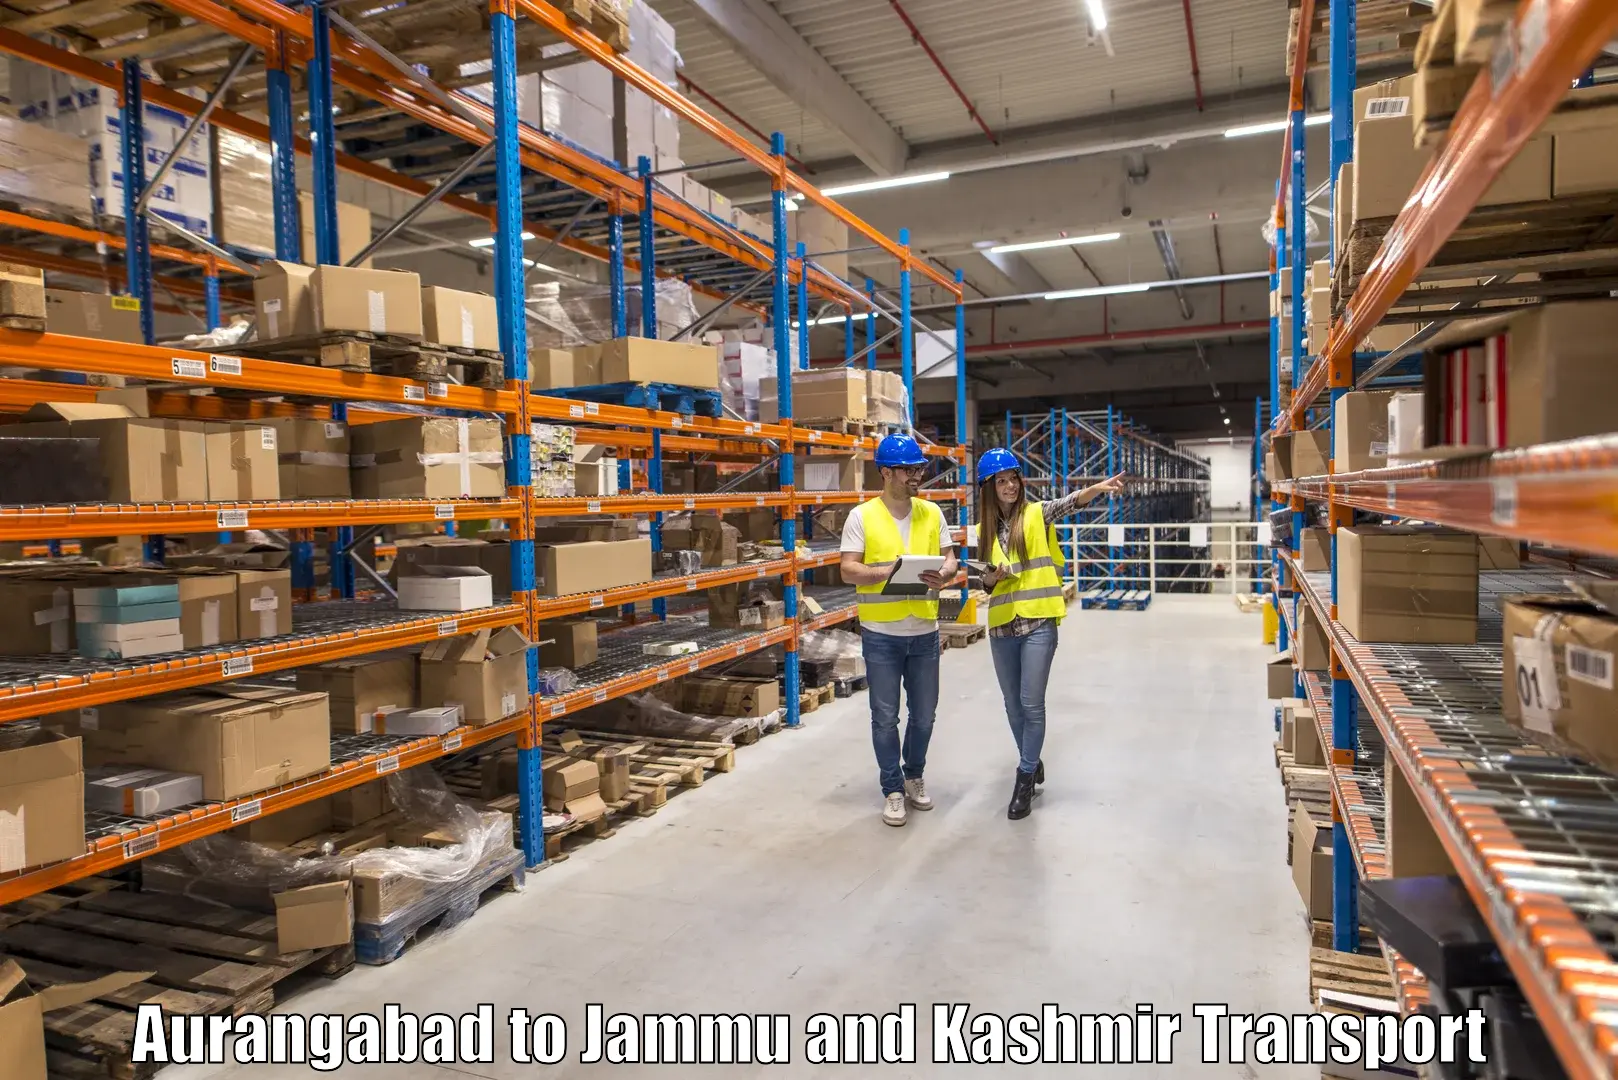 Delivery service Aurangabad to Srinagar Kashmir